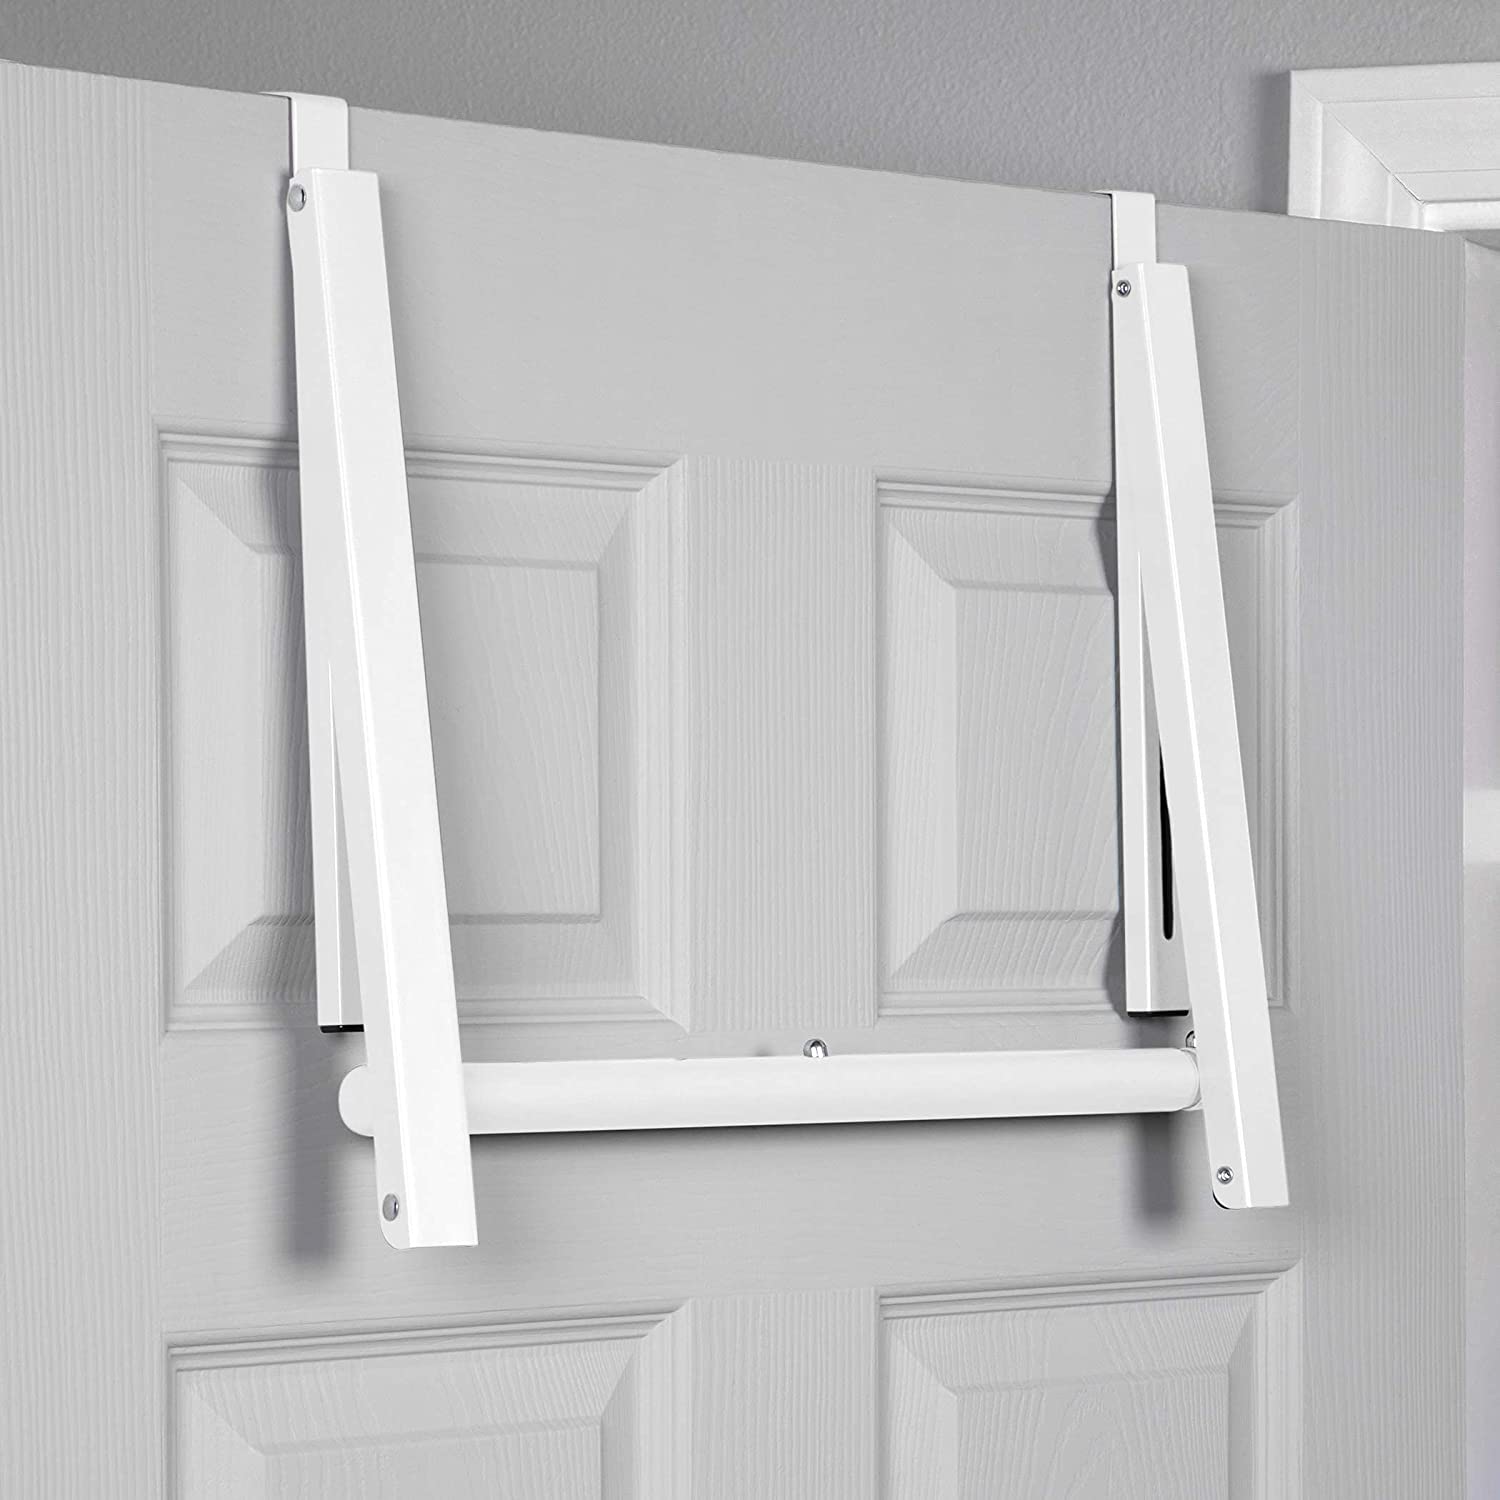 Over the Door Drying Rack Foldable - Over the Door Rack for Hanging Towels, Coats & Clothes - Over the Door Hanger Hooks for Bedroom, Washroom.